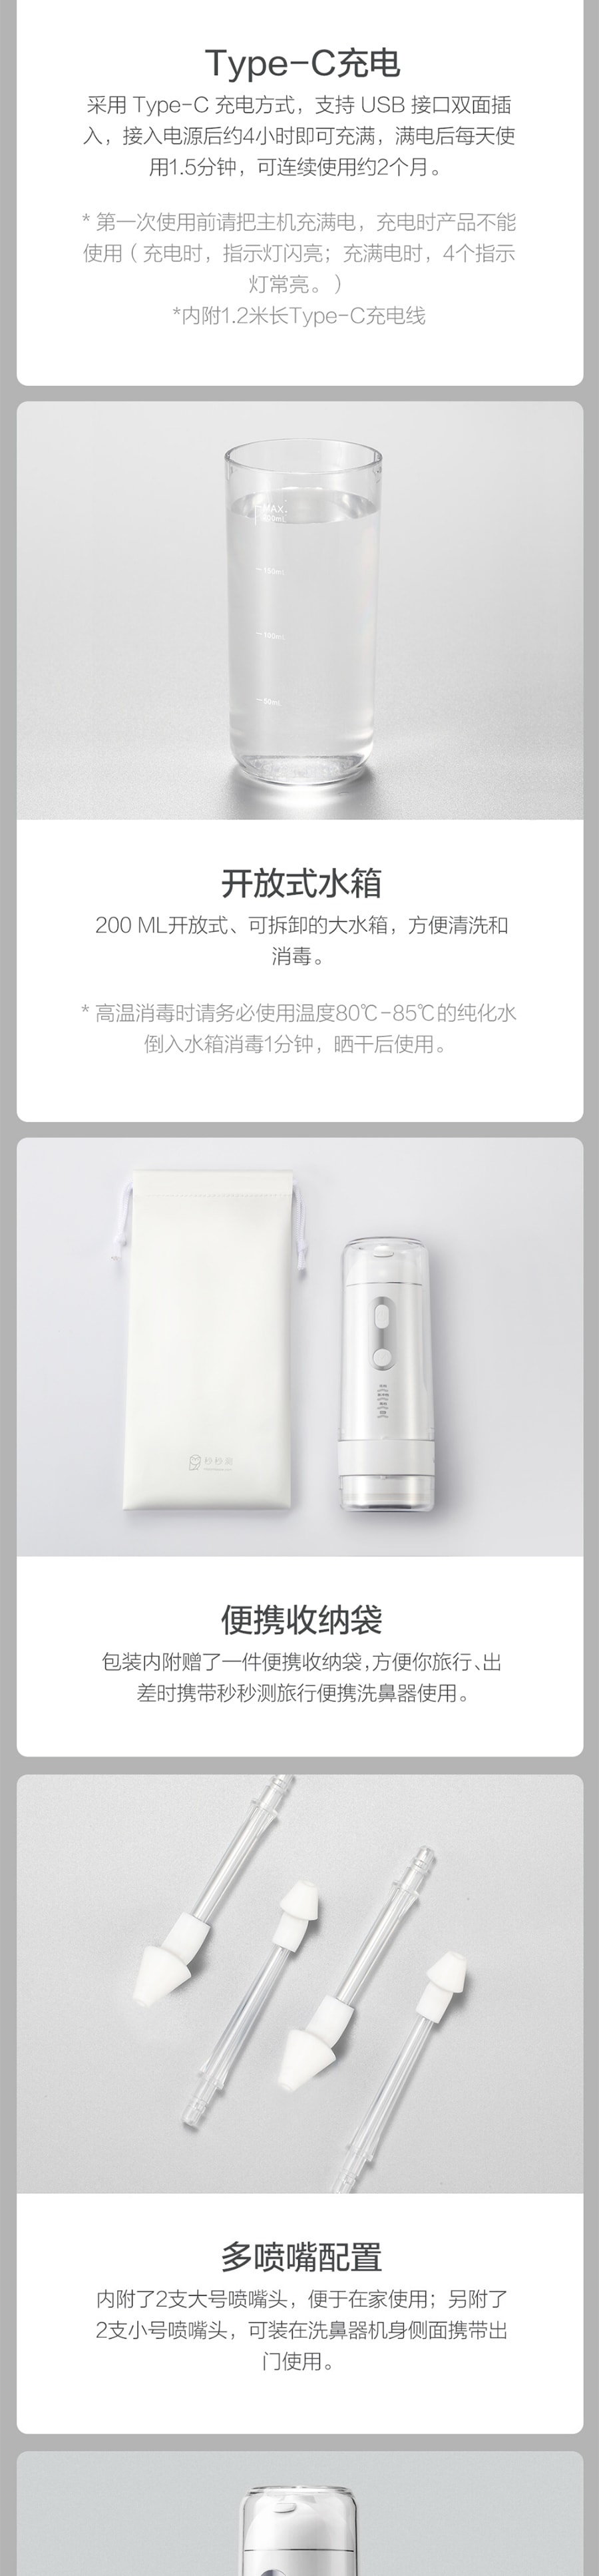 【中国直邮】小米有品 秒秒测便携式旅行电动洗鼻器